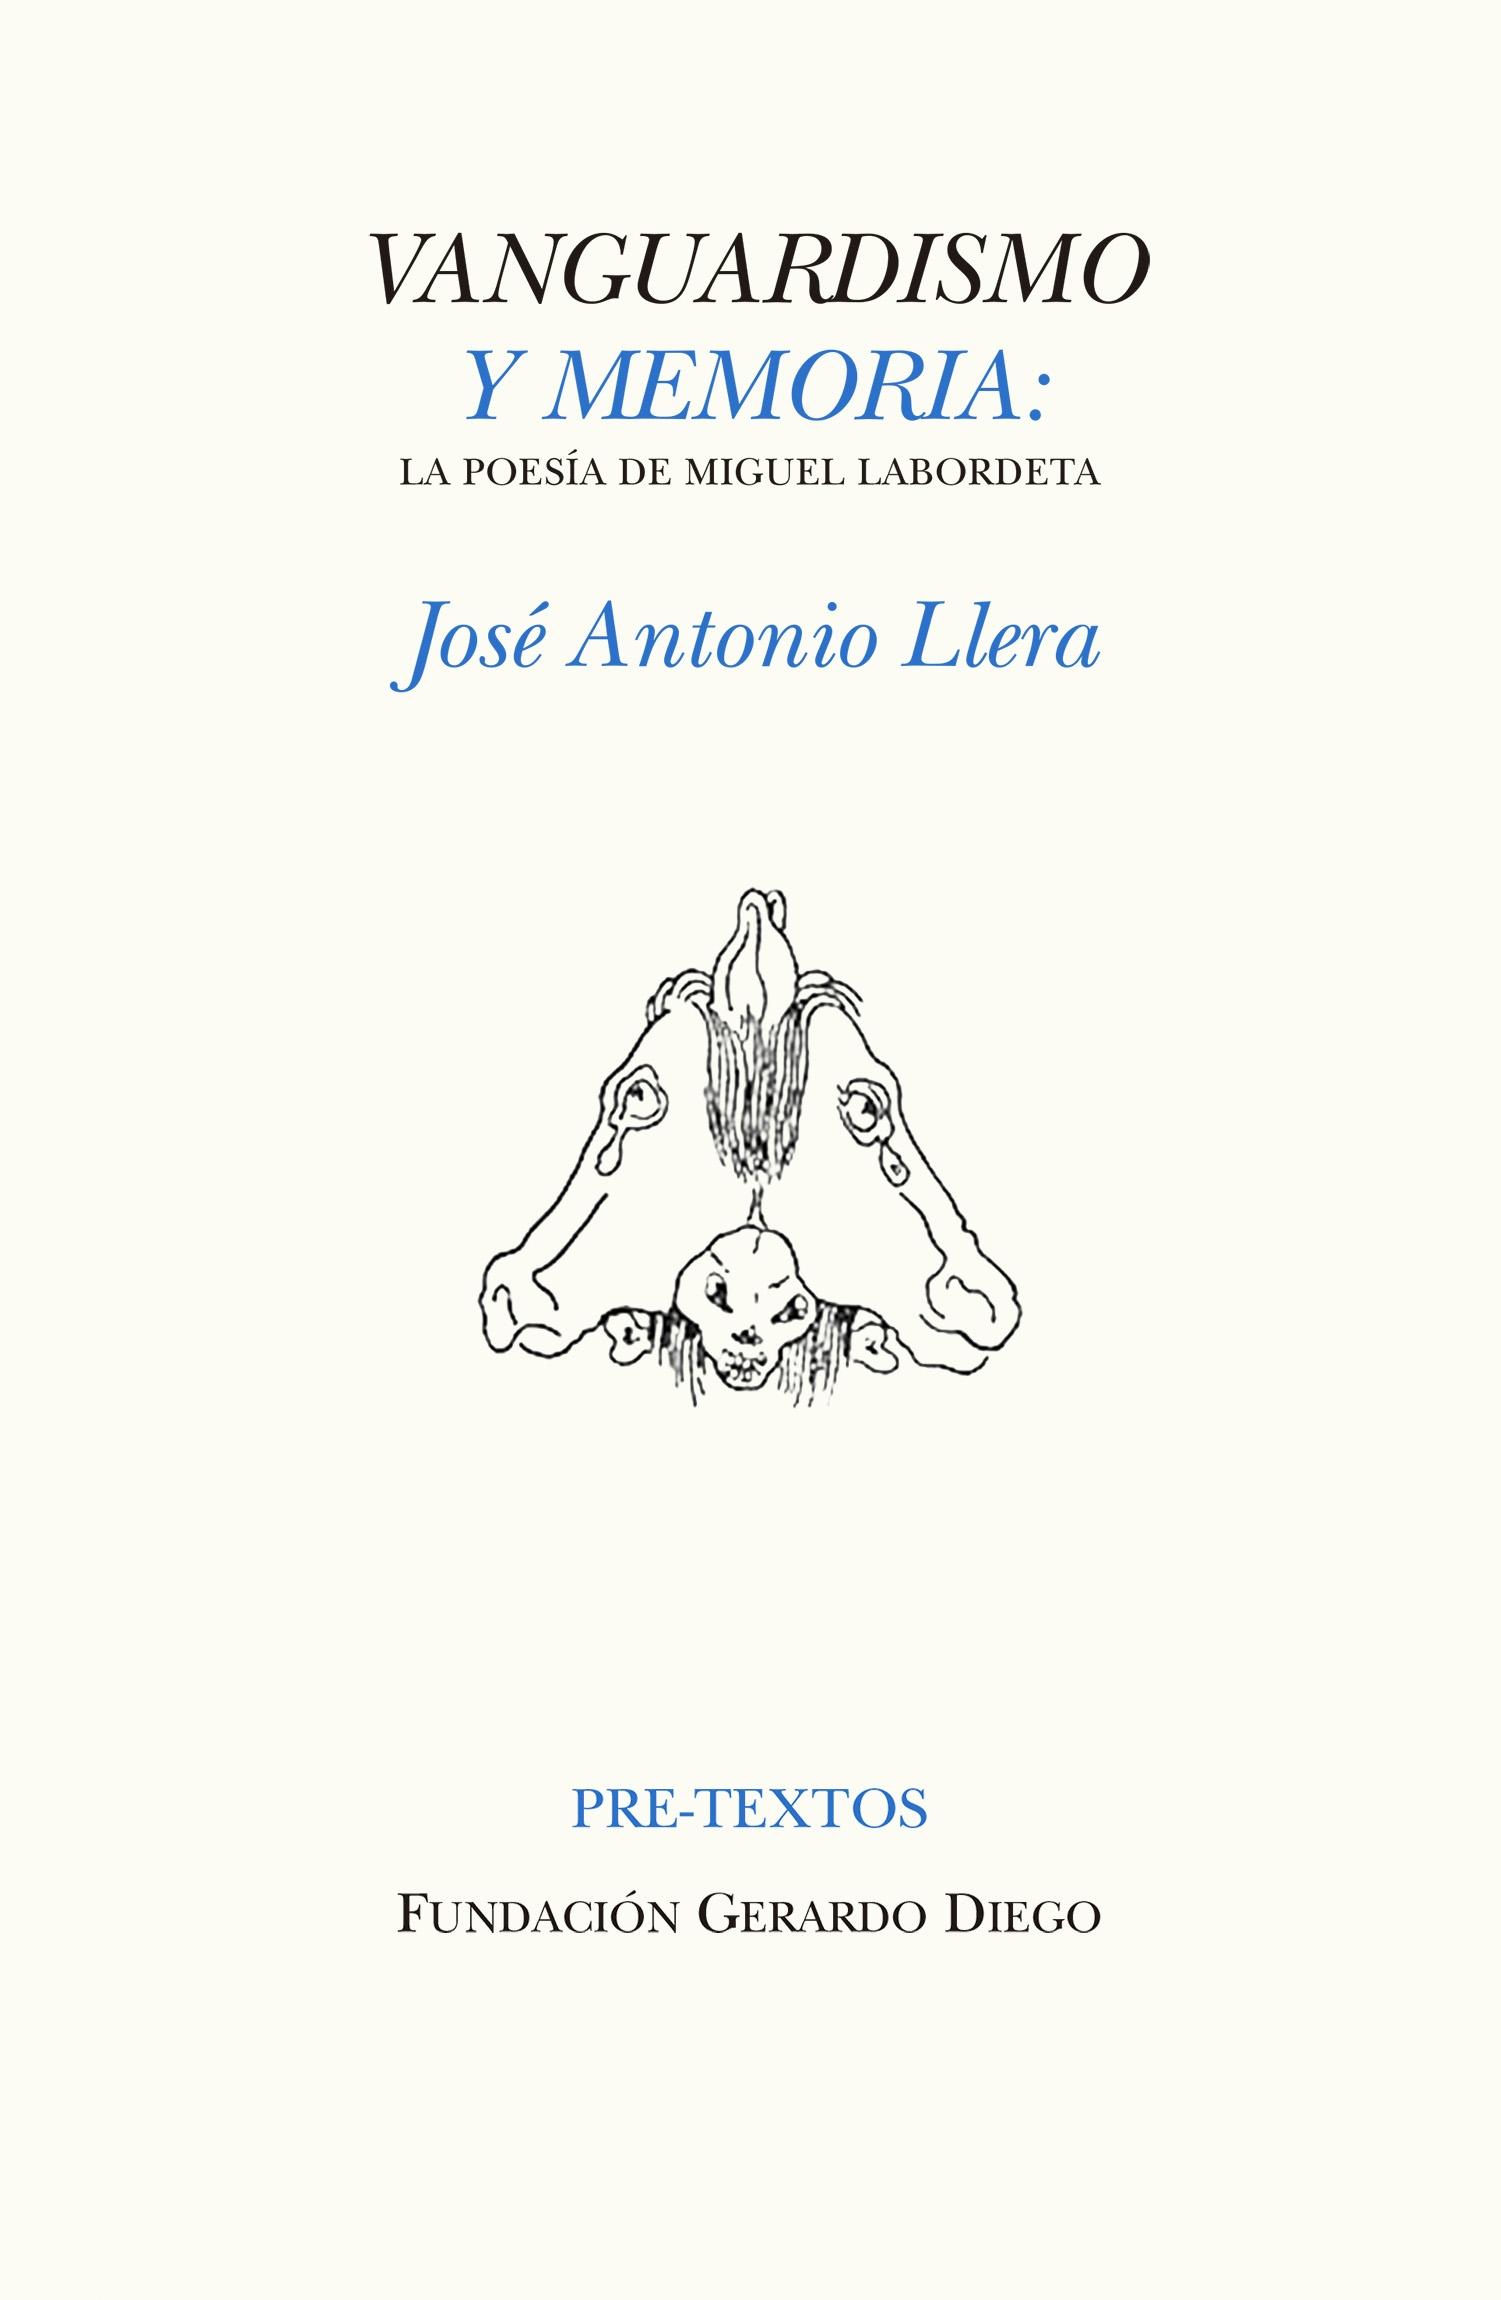 Vanguardismo y Memoria "La Poesía de Miguel Labordeta". 